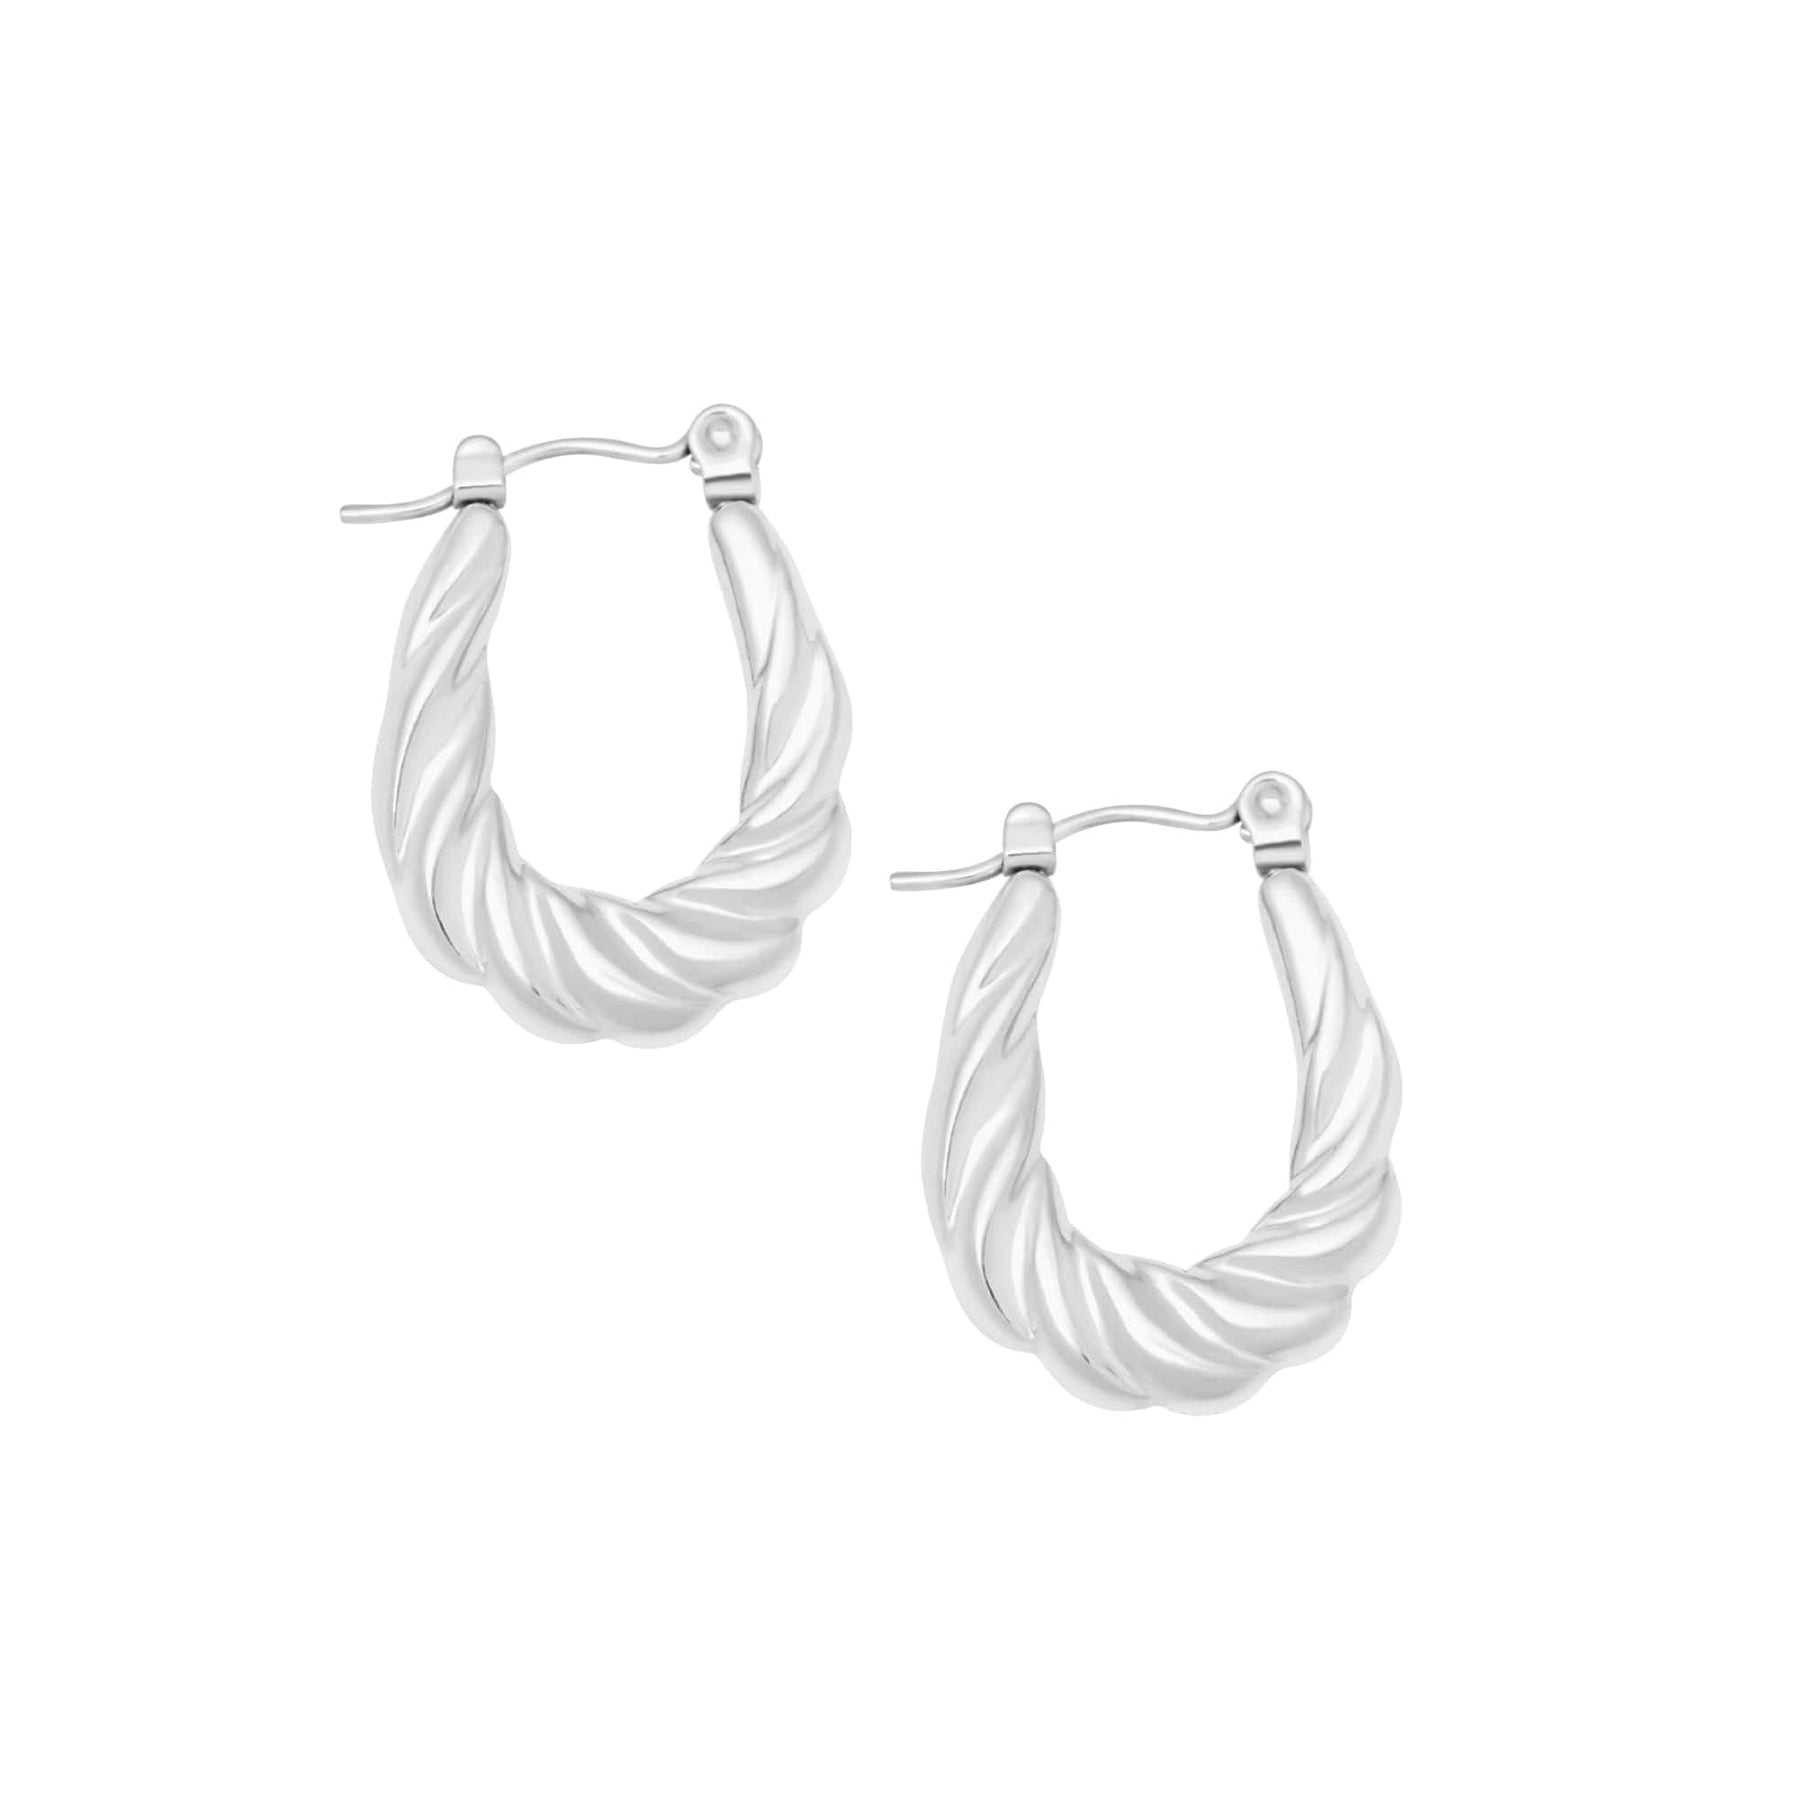 BohoMoon Stainless Steel Penny Hoop Earrings Silver